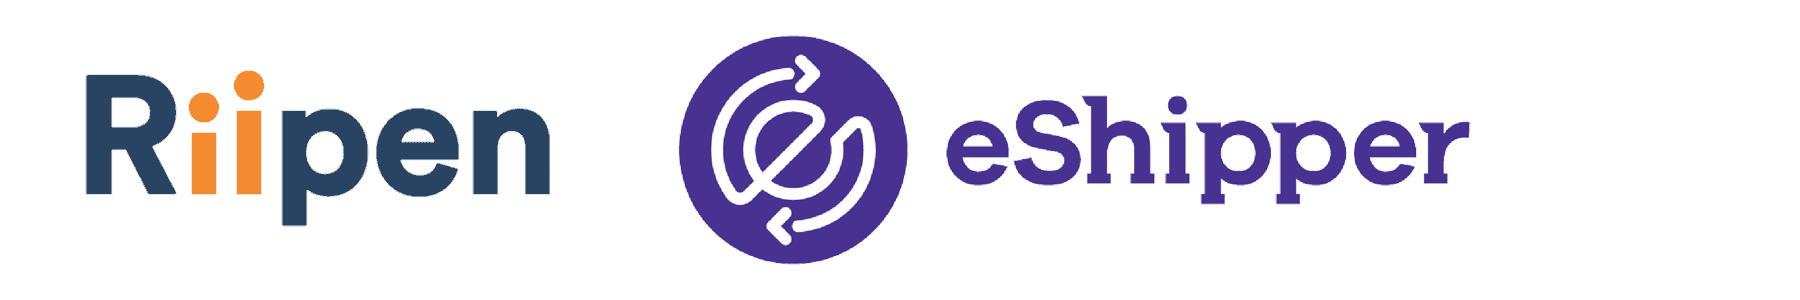 Riipen and eShipper logos